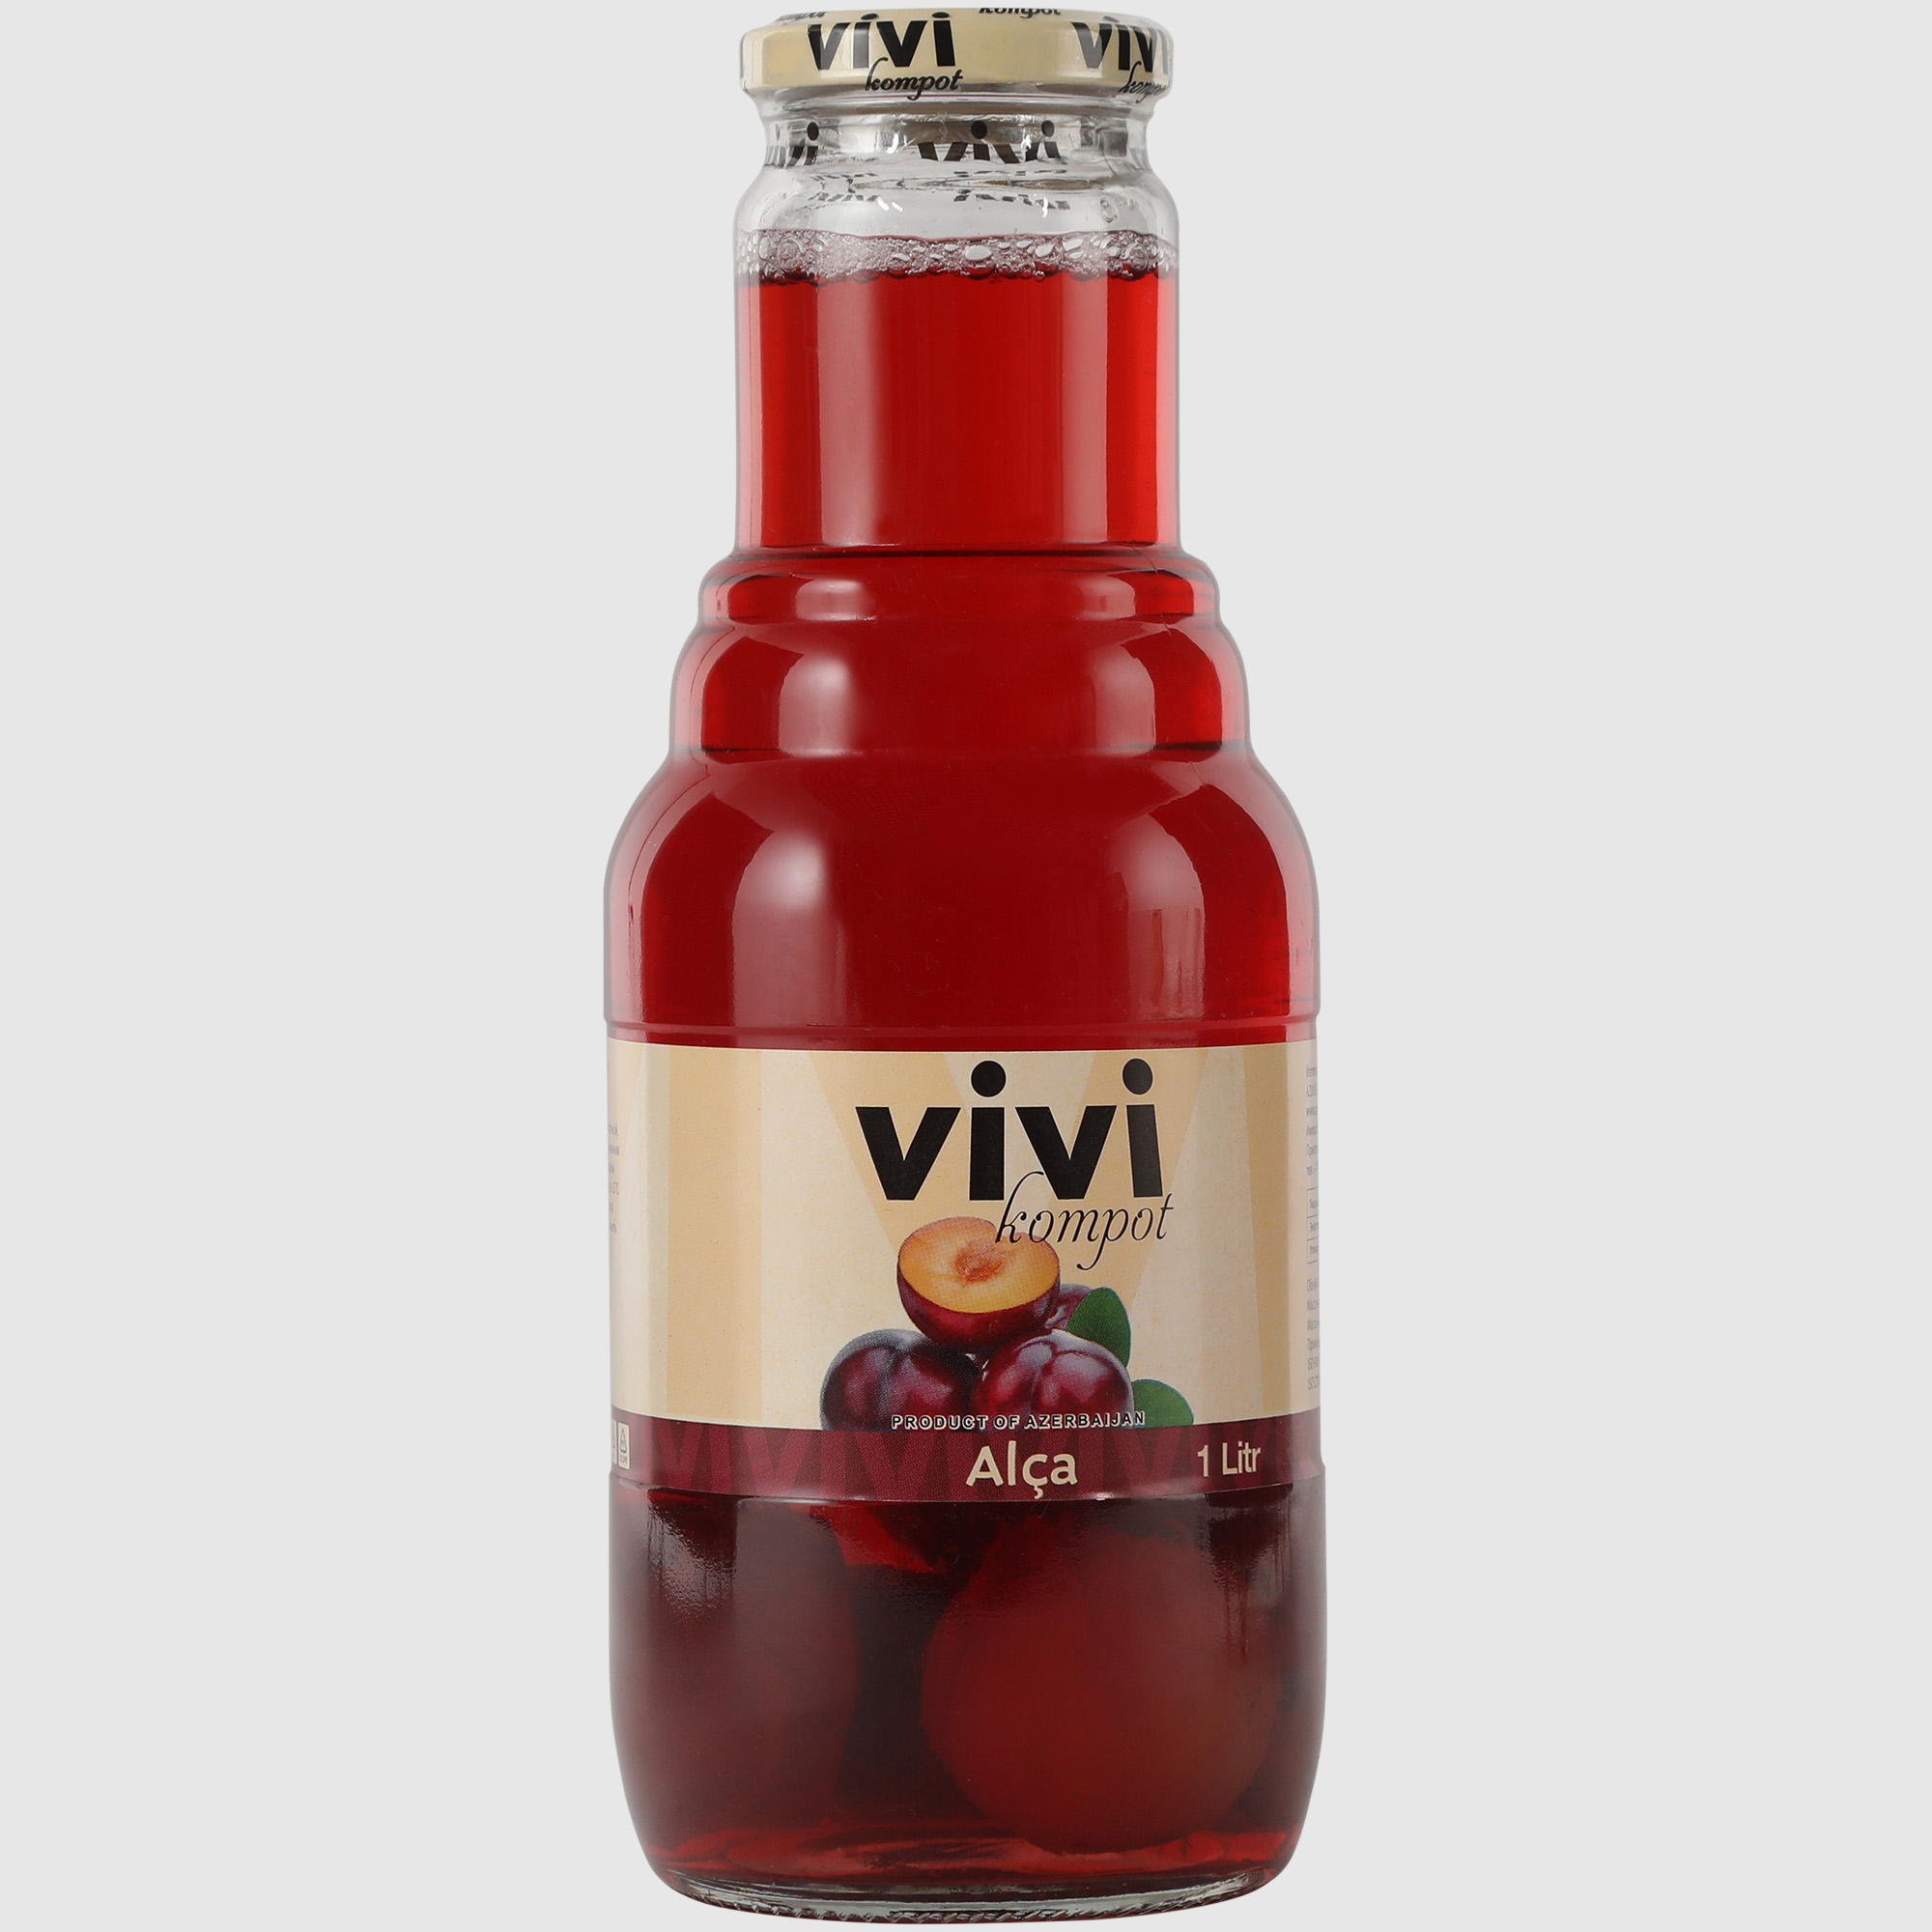 Компот стерилизованный VIVI из красной алычи 1 л компот стерилизованный vivi из красной алычи 1 л